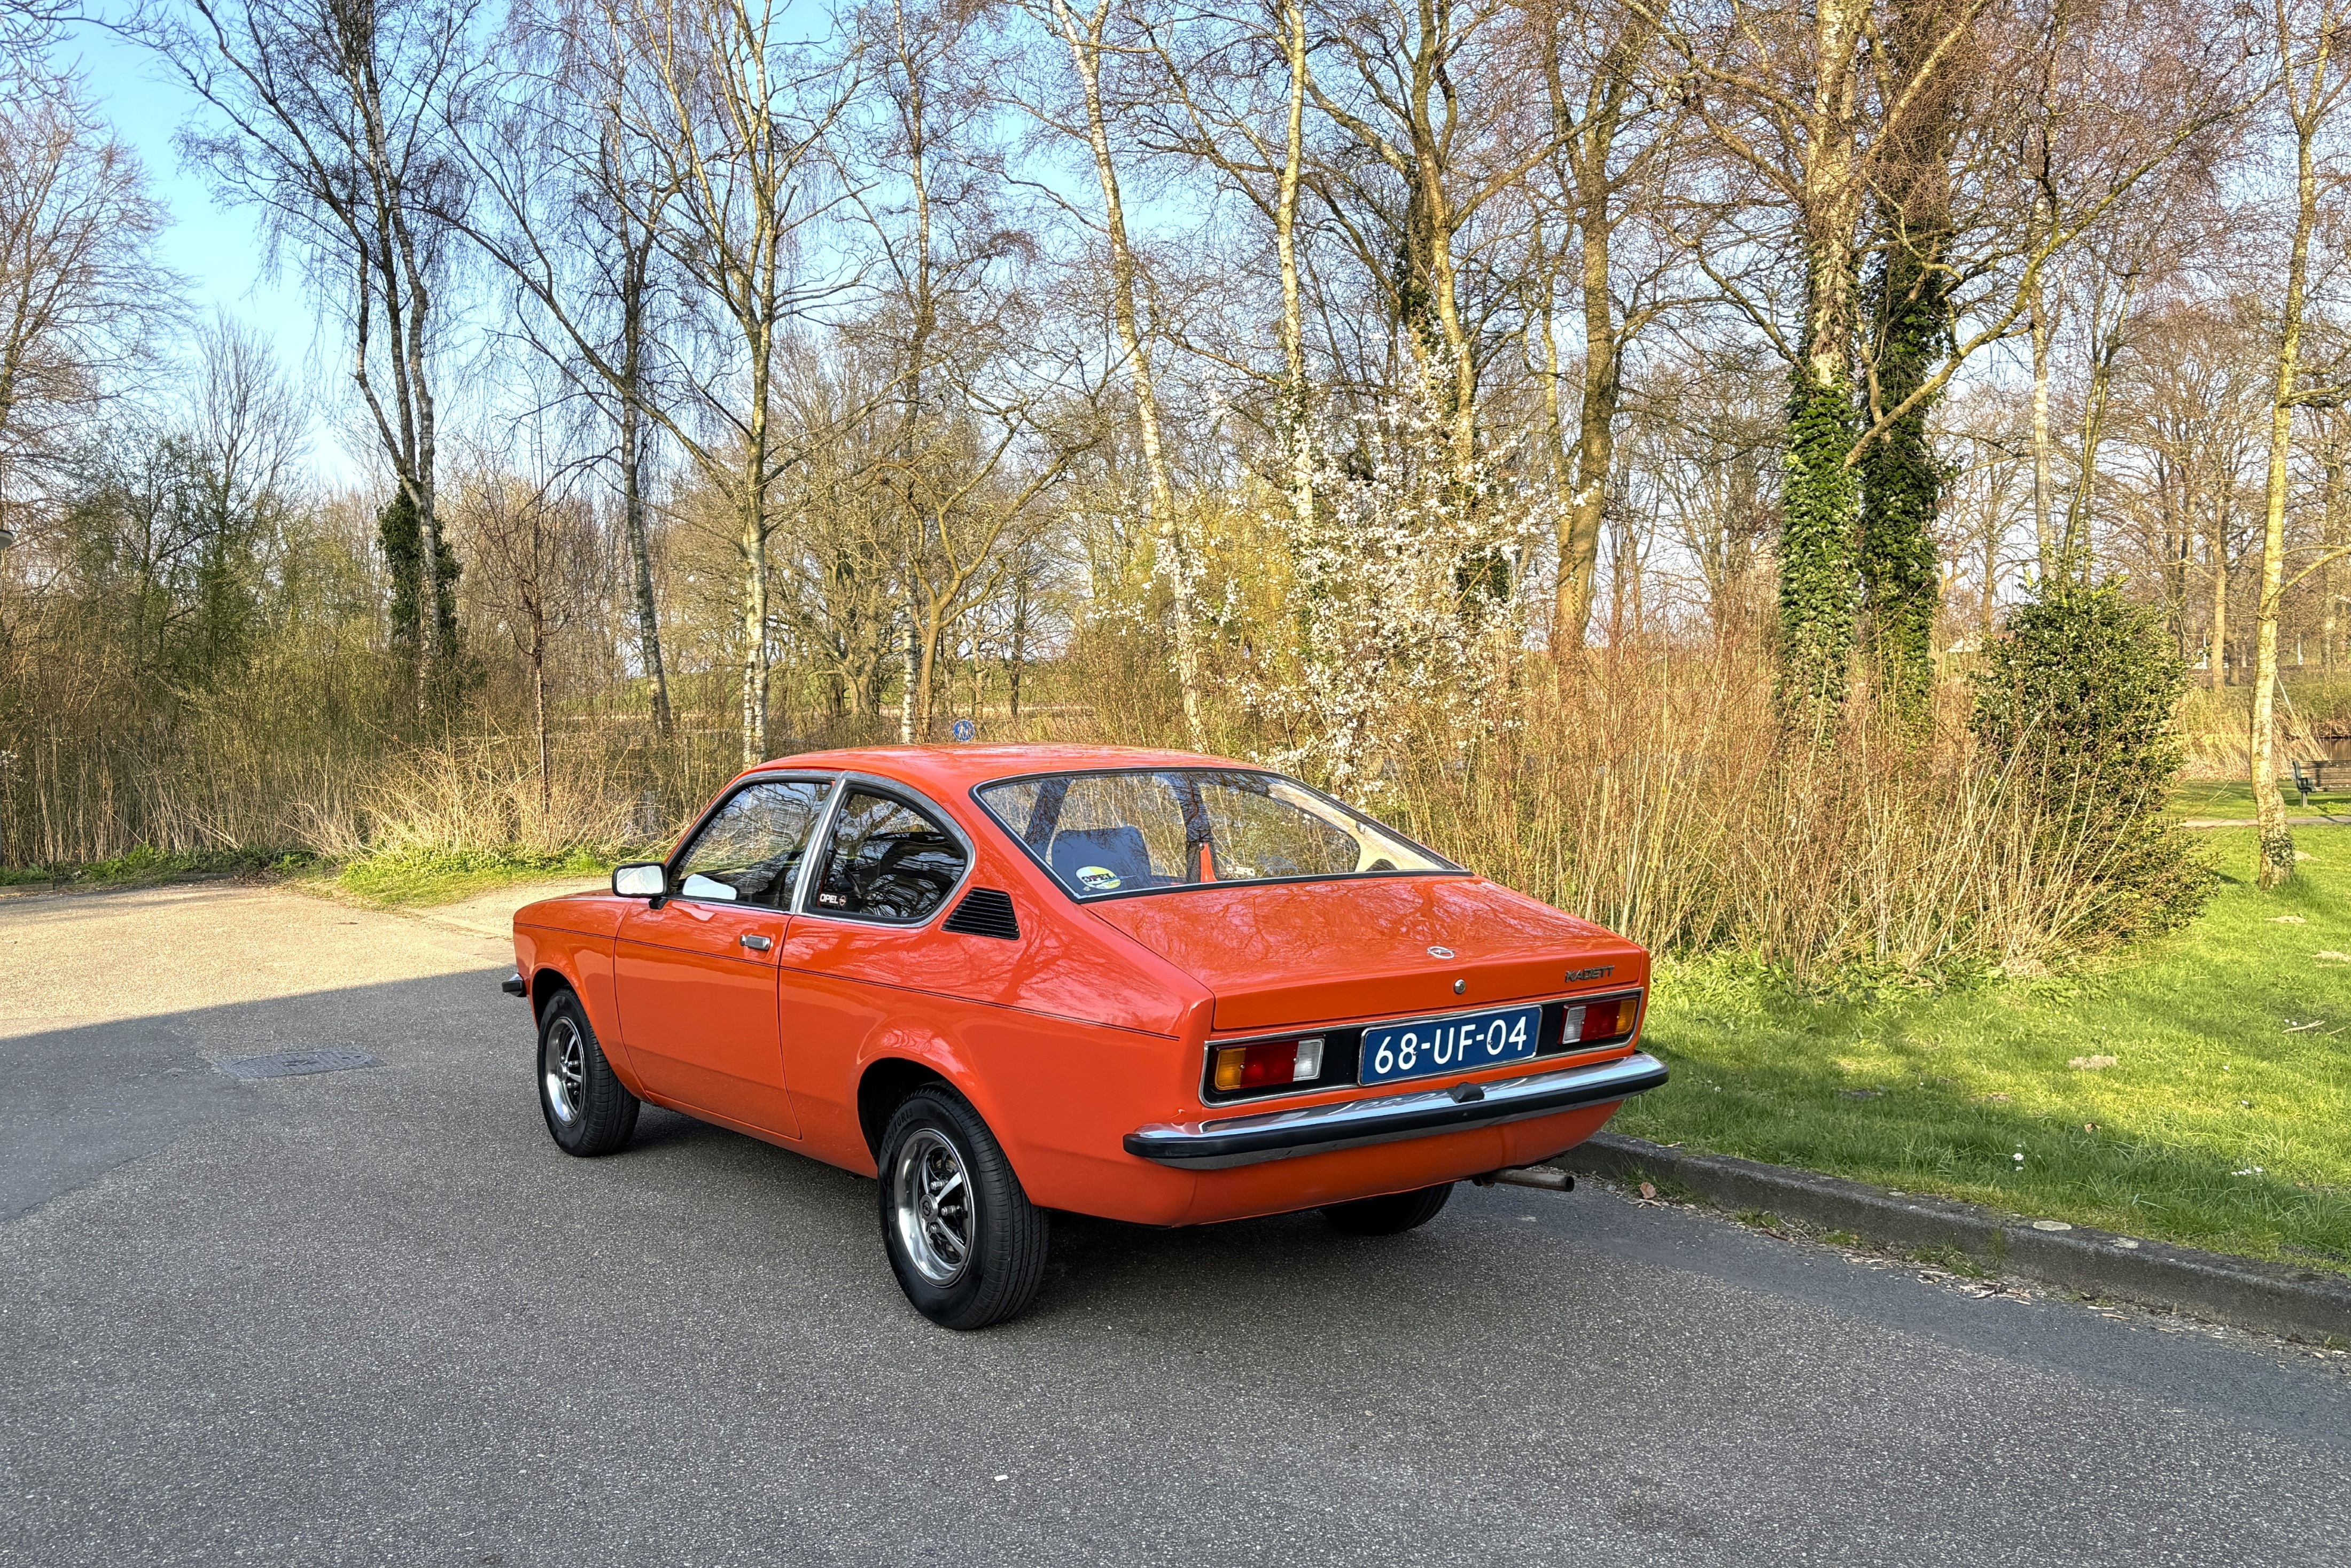 1978 Opel Kadett Coupe zeer origineel. oldtimer te koop